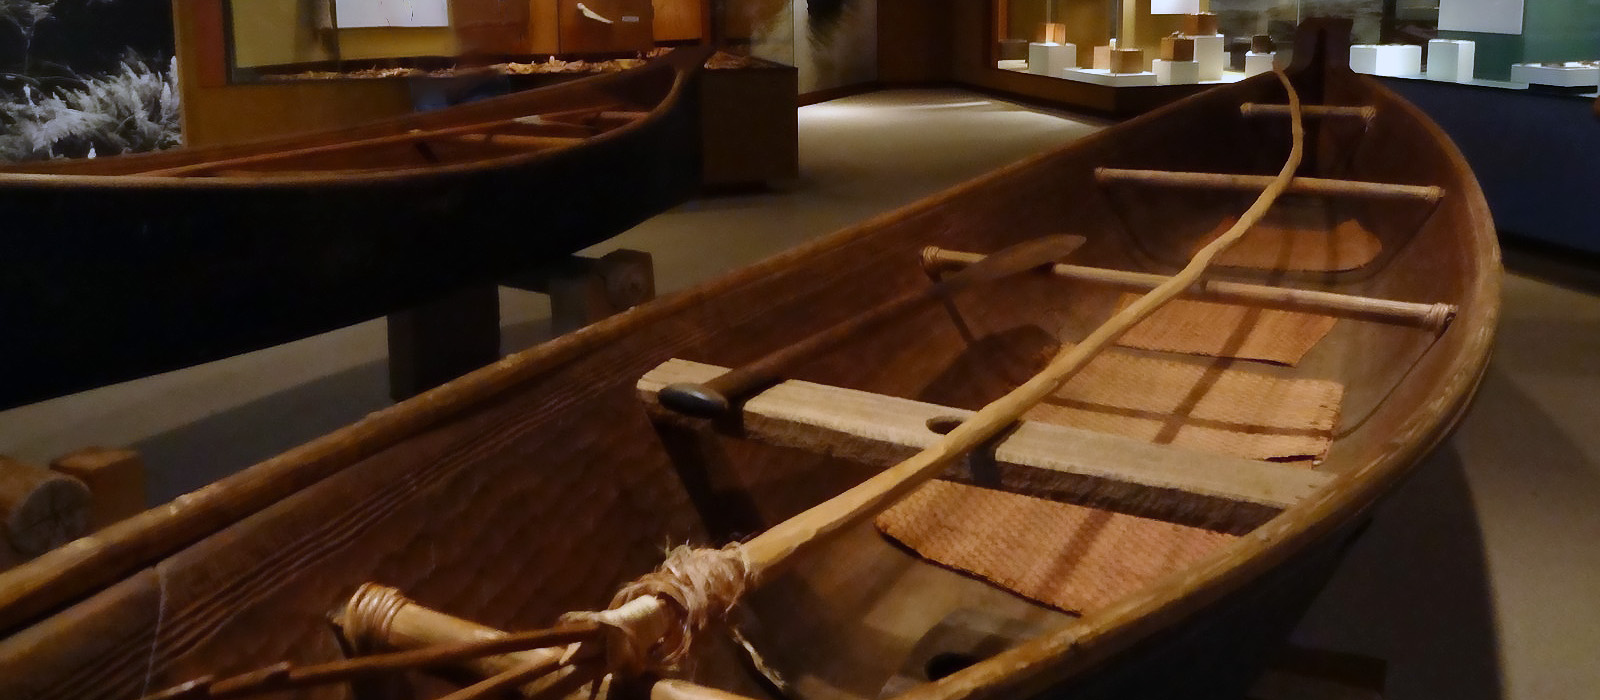 Makah Canoe in Museum